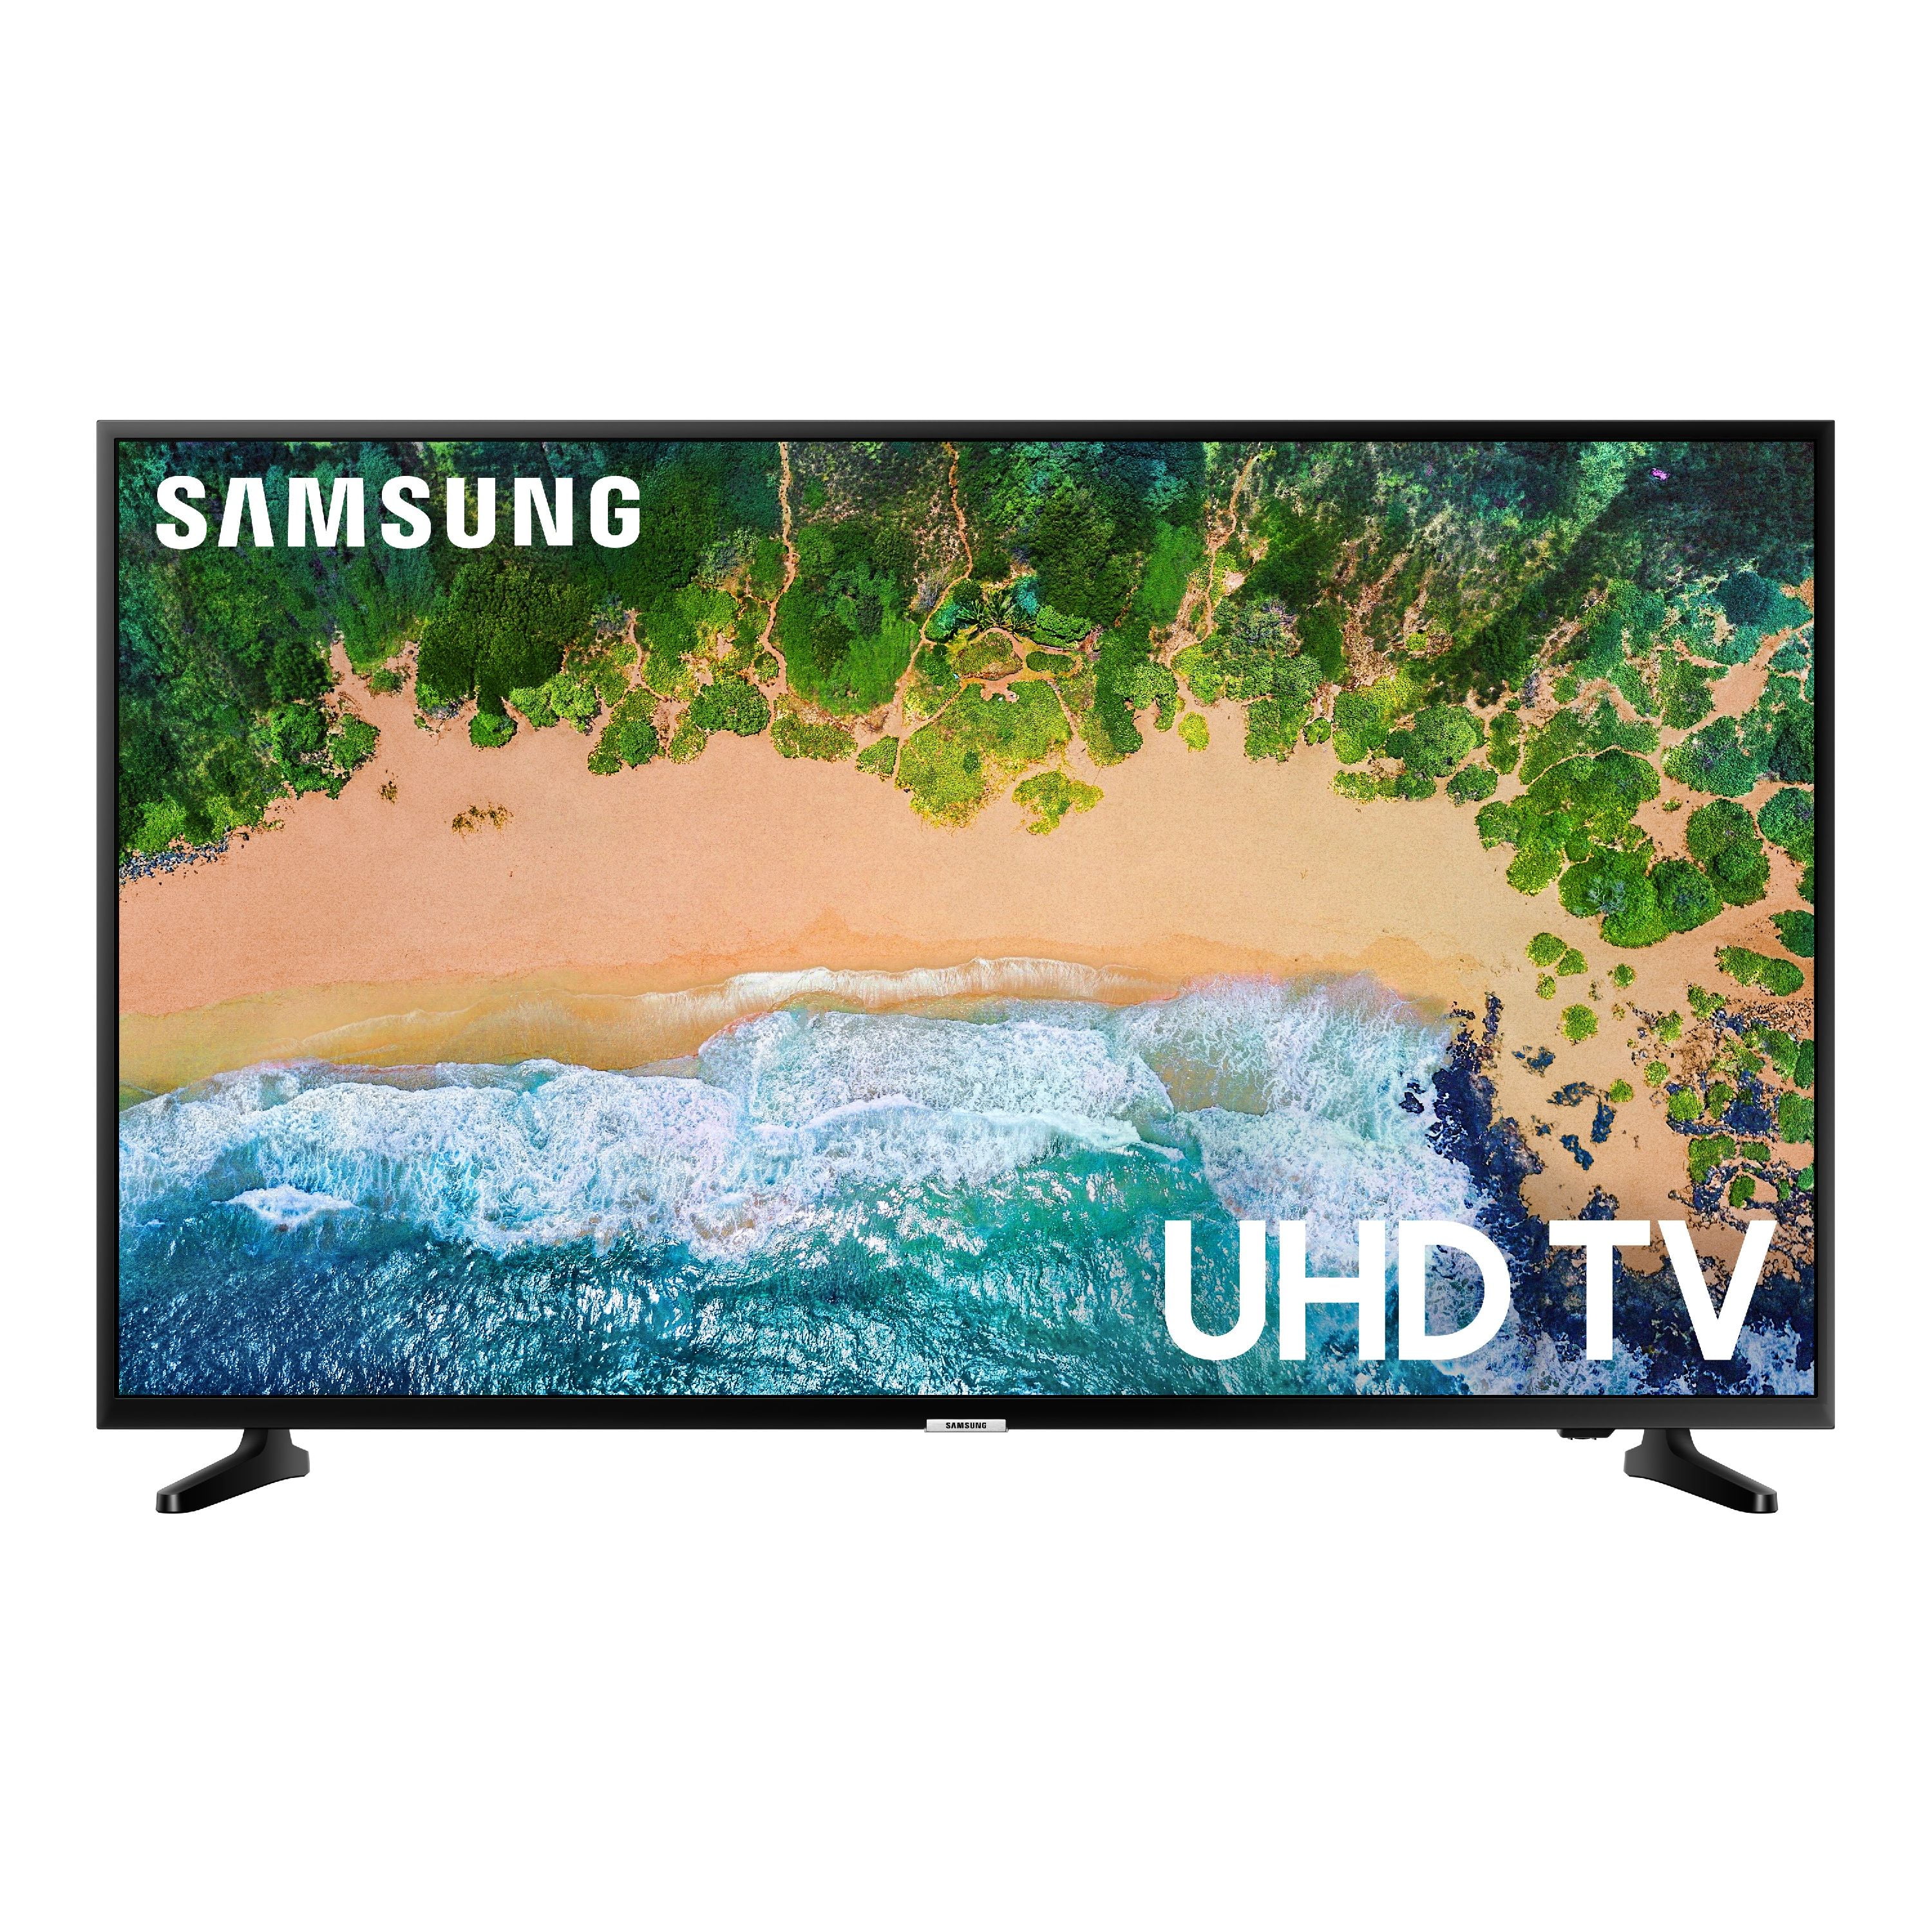 sandsynlighed dagsorden appetit SAMSUNG 55" Class 4K UHD 2160p LED Smart TV with HDR UN55NU6900 -  Walmart.com